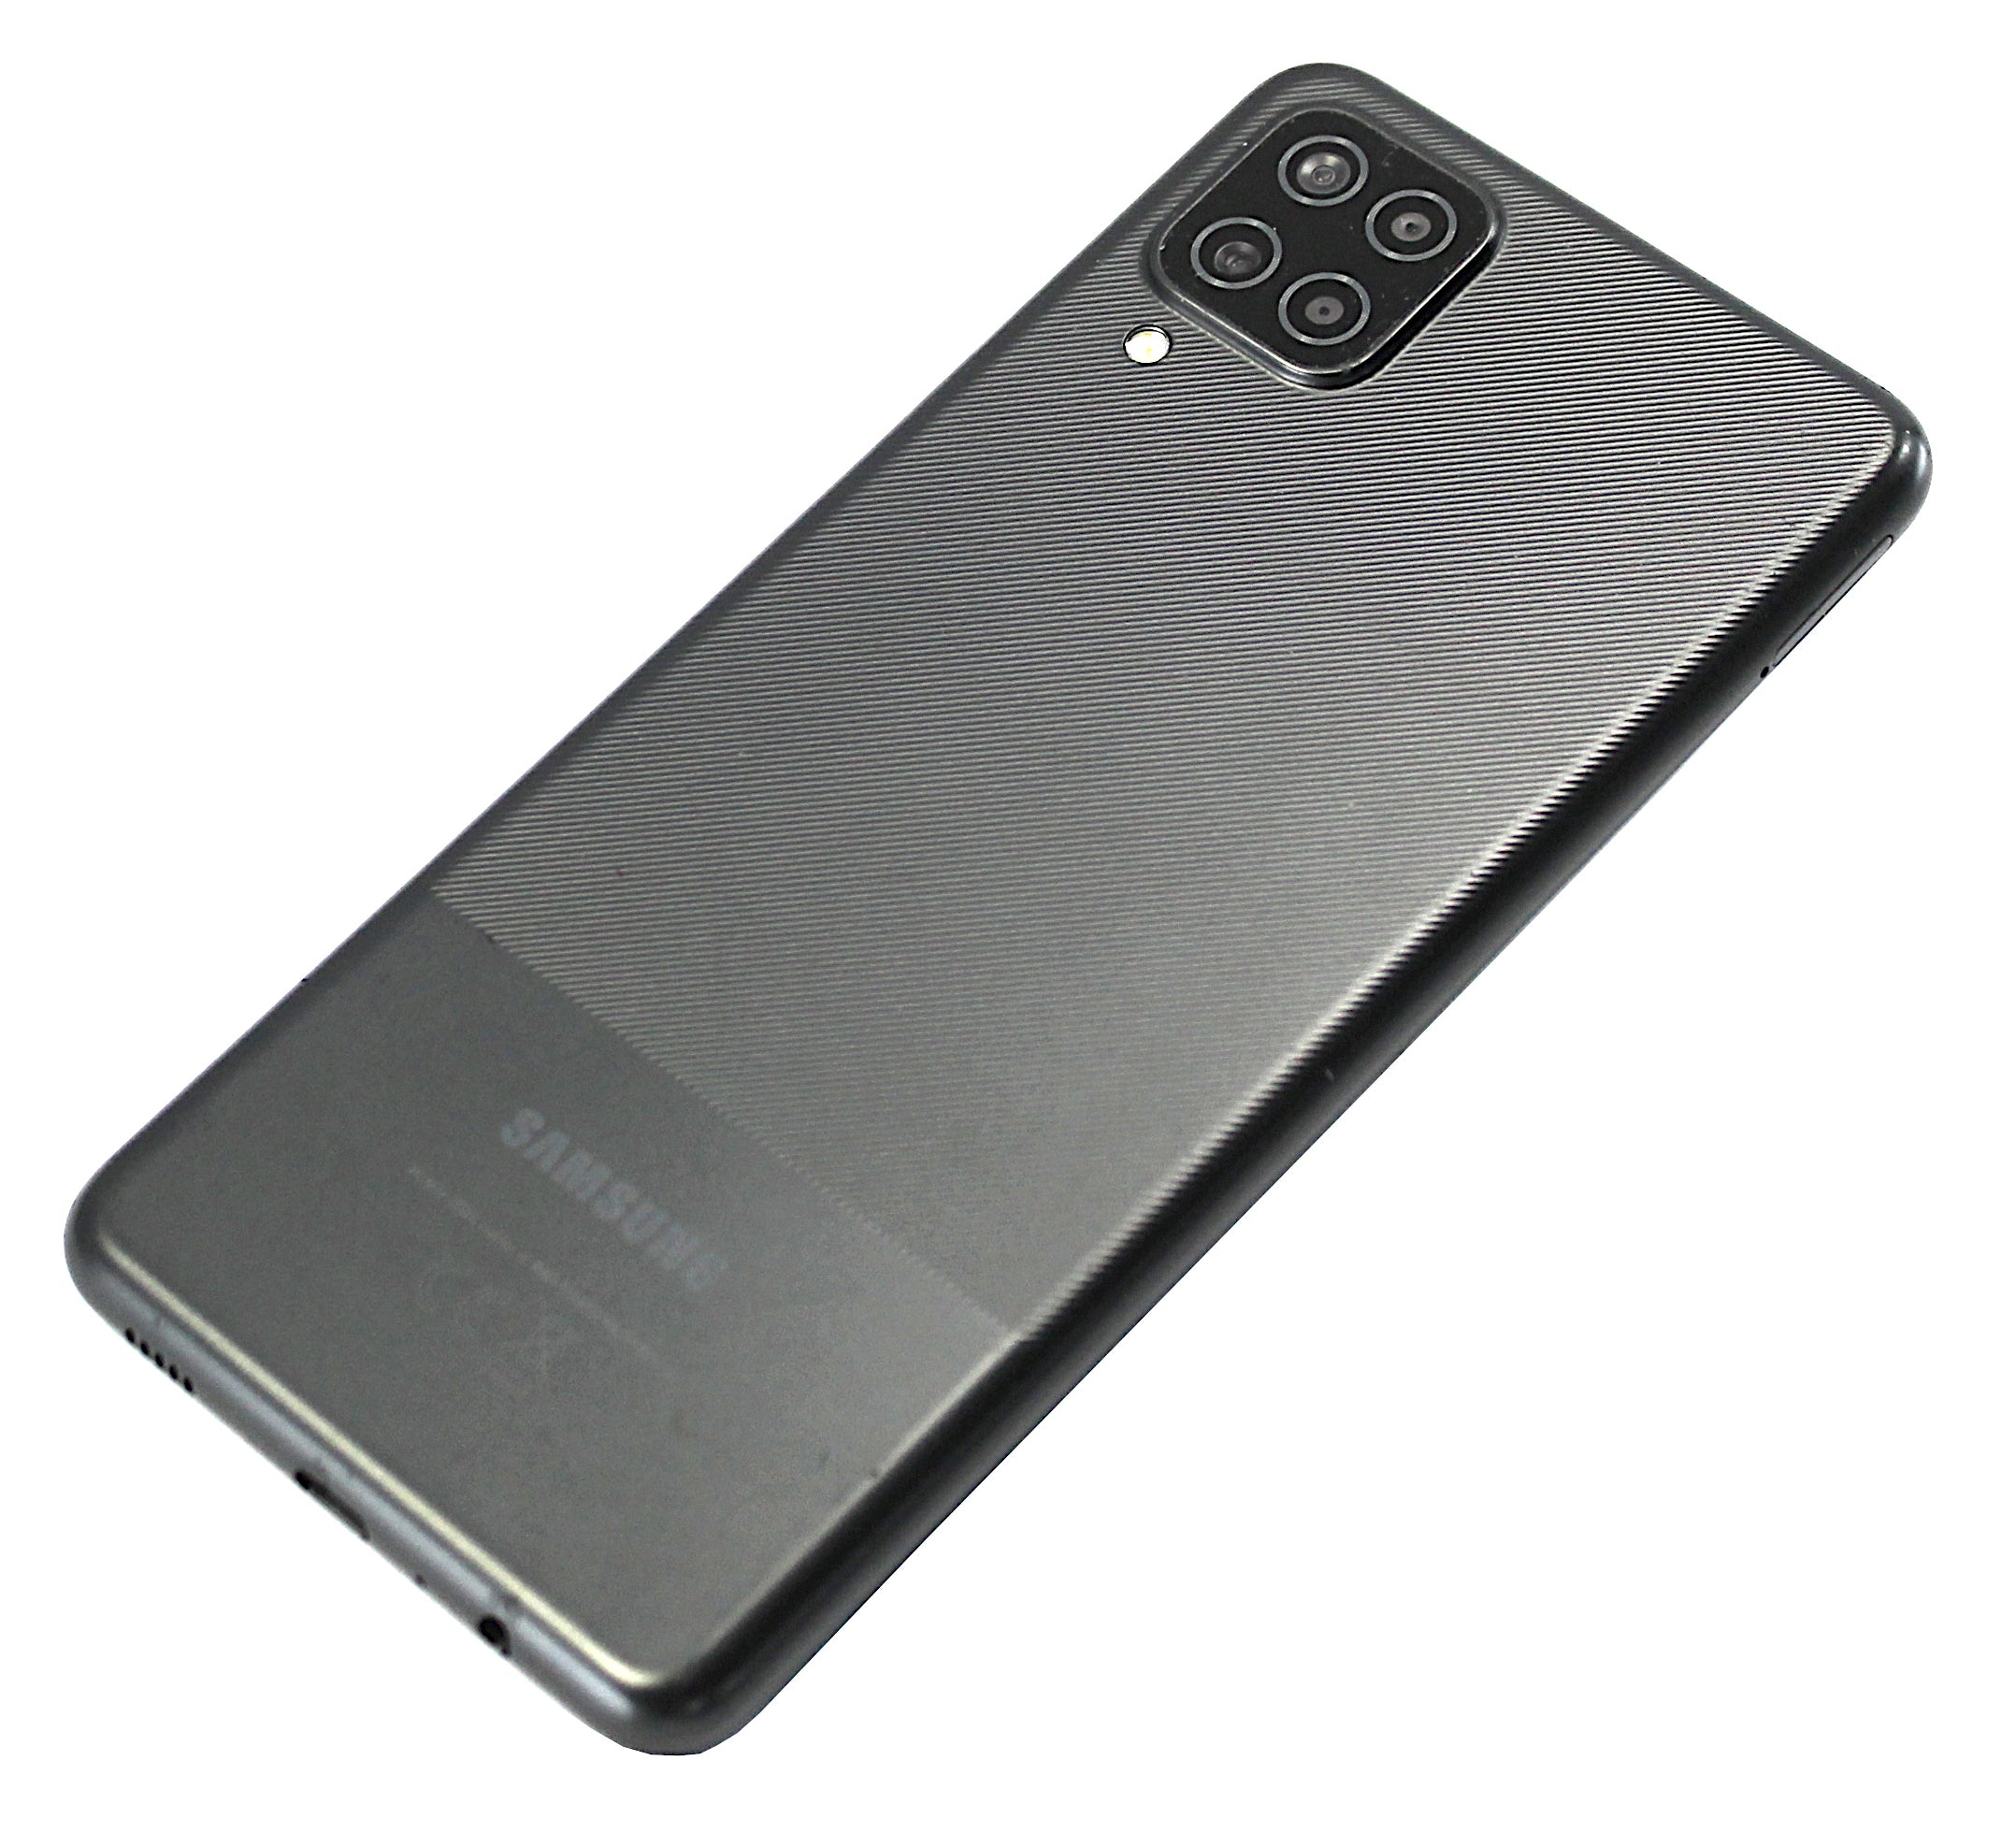 Samsung Galaxy A12 Smartphone, 64GB, Vodafone, Black, SM-A125F